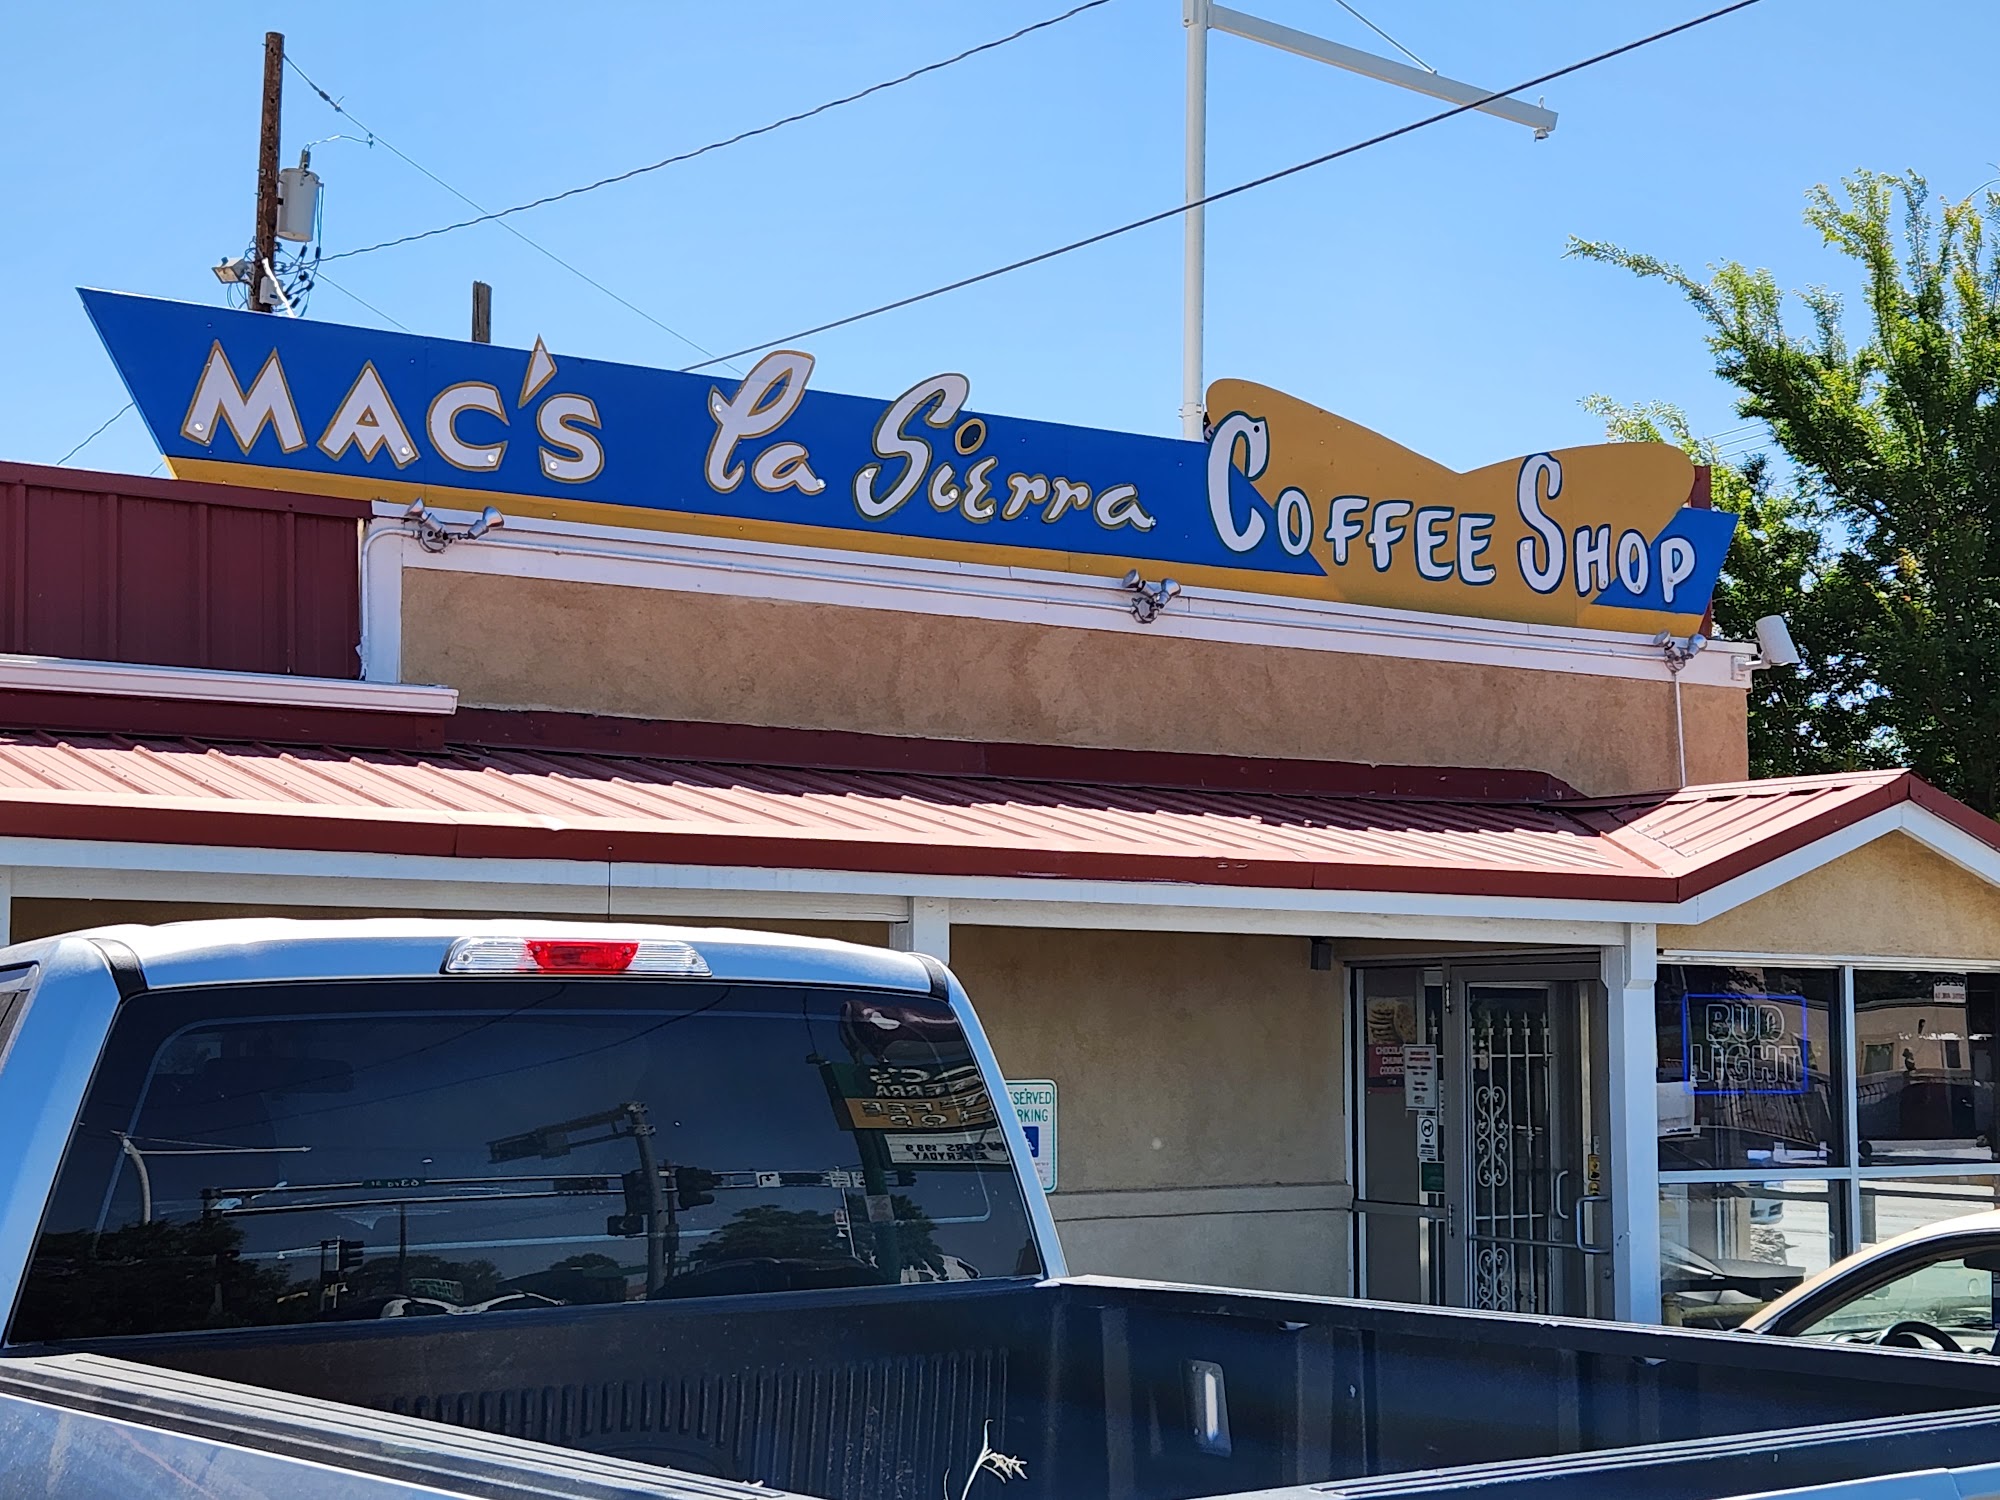 Mac's La Sierra Coffee Shop